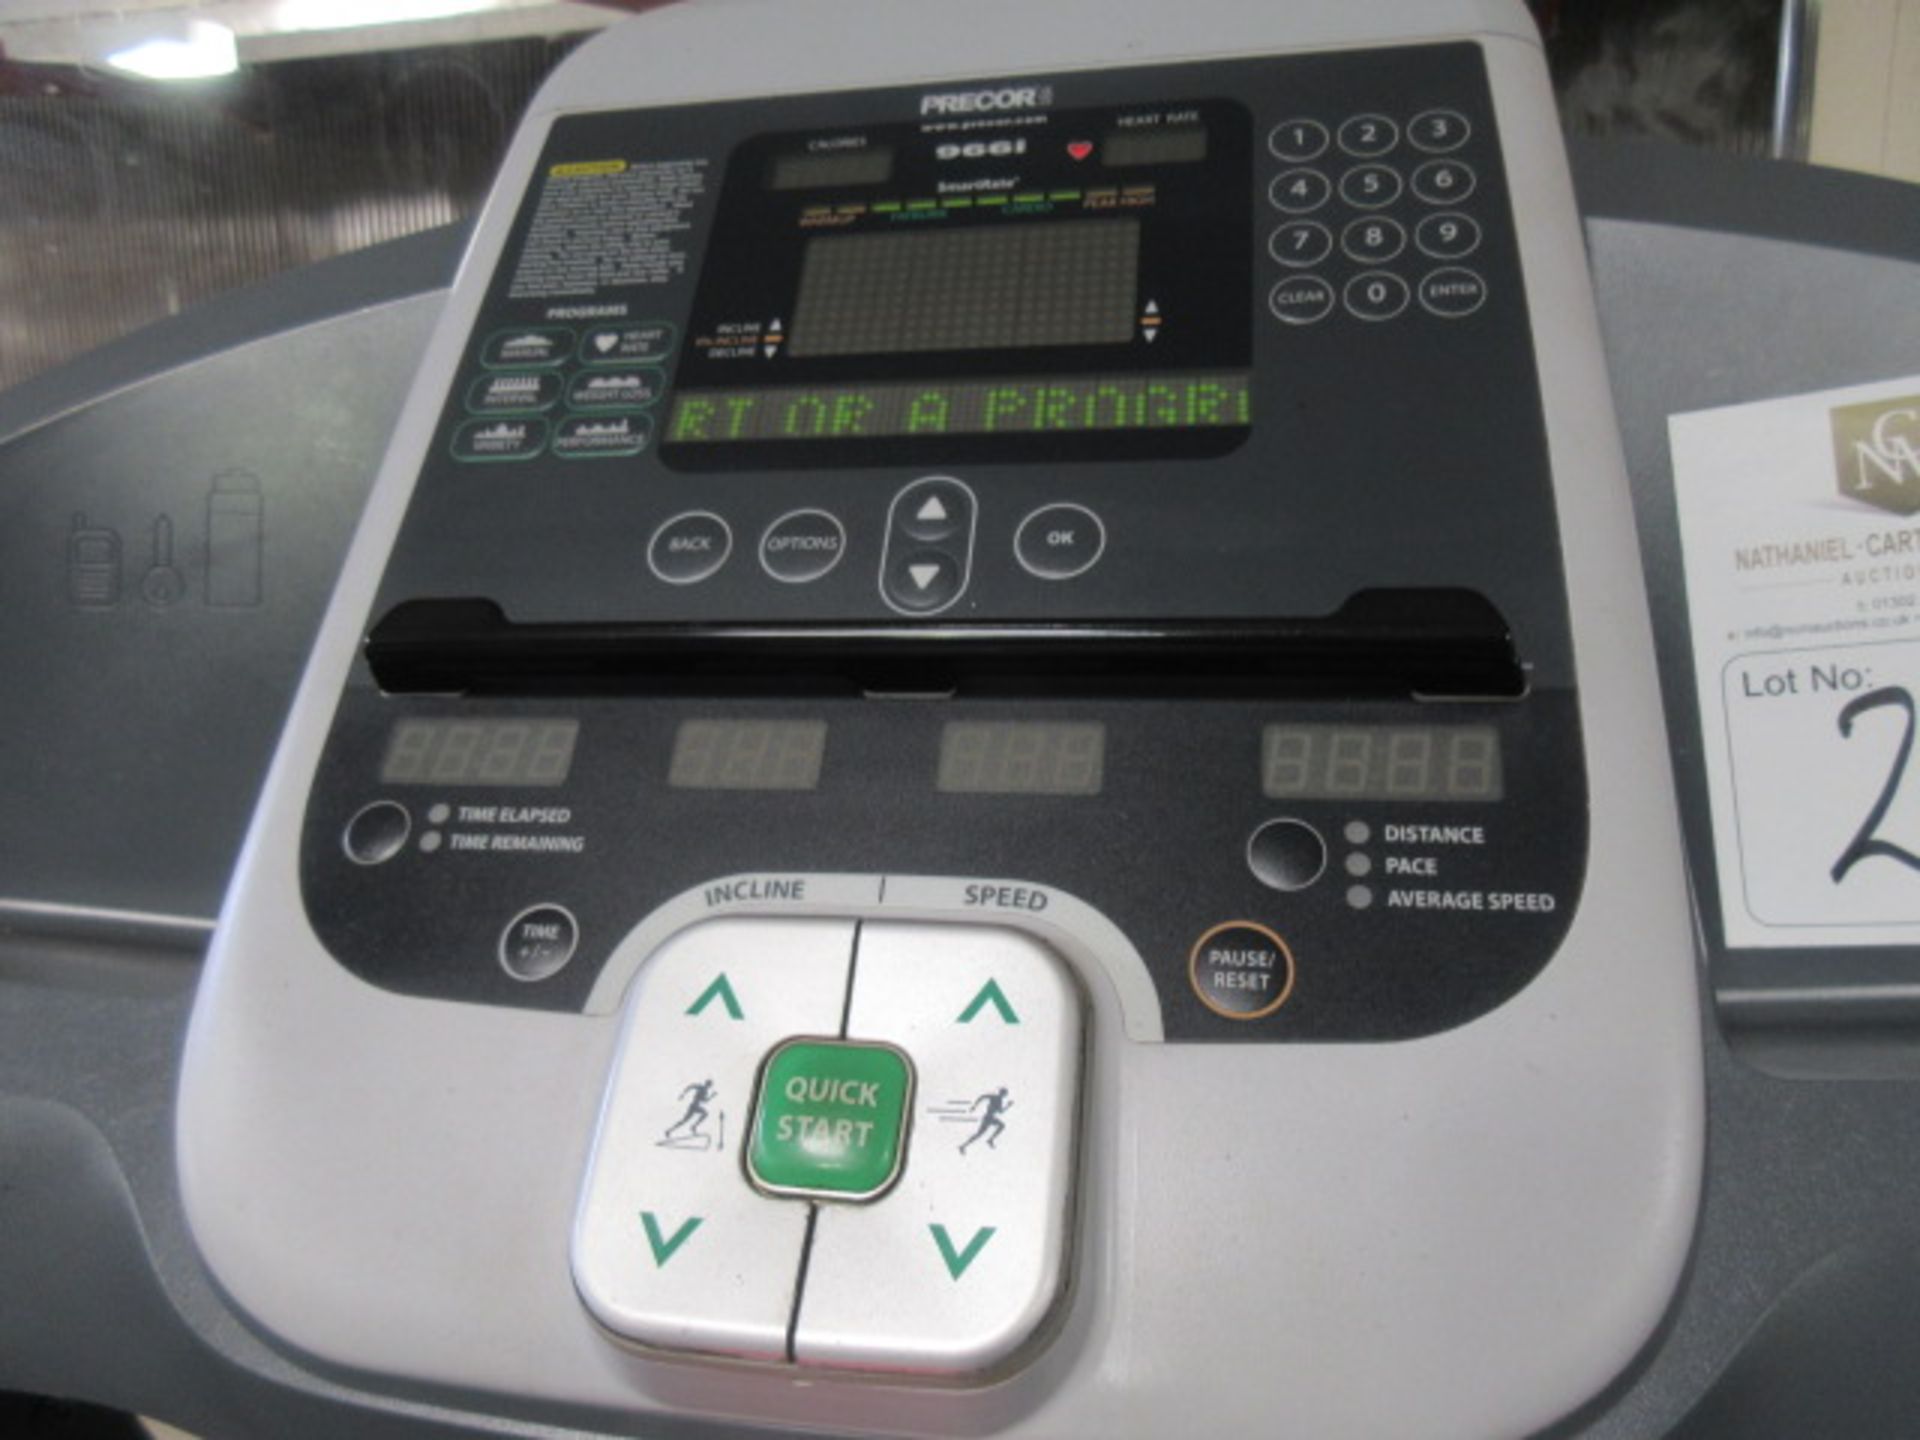 Precor 966i Treadmill - Bild 4 aus 7